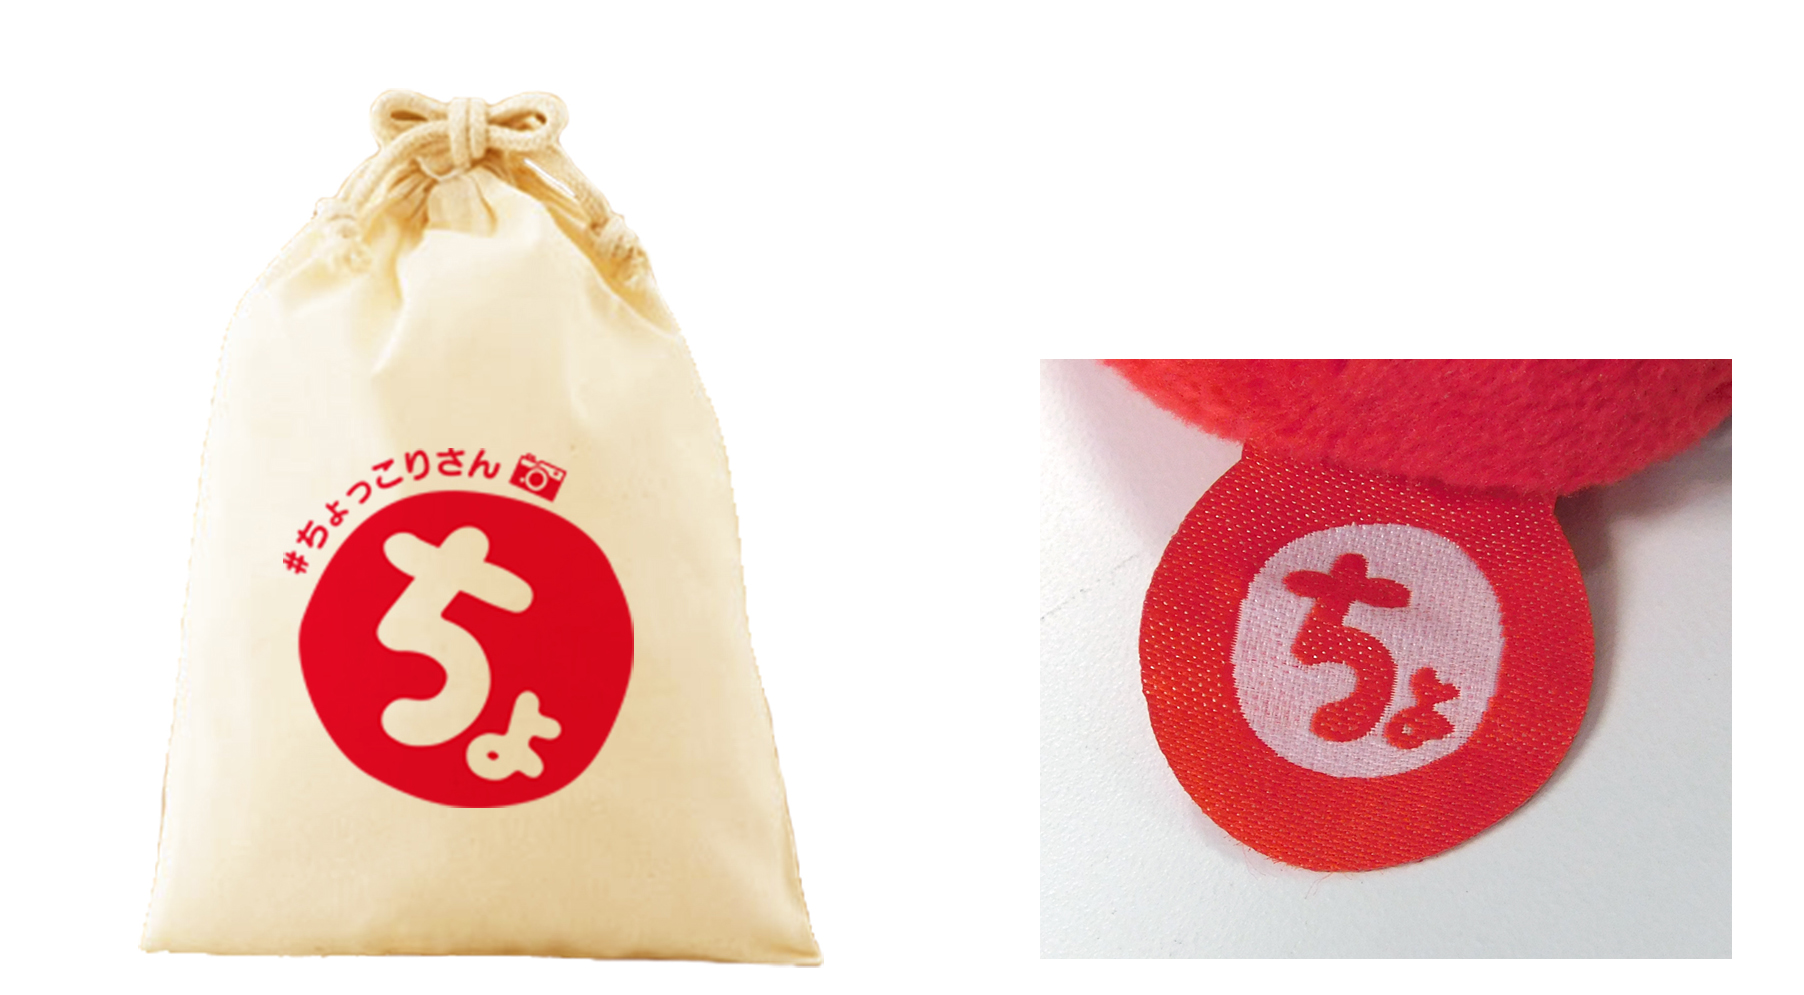 写真左：オリジナル巾着袋。写真右：「ちょっこり」さんにはシリーズ共通のオリジナルタグが付いています。巾着袋は共通タグと同じデザインをあしらったもの